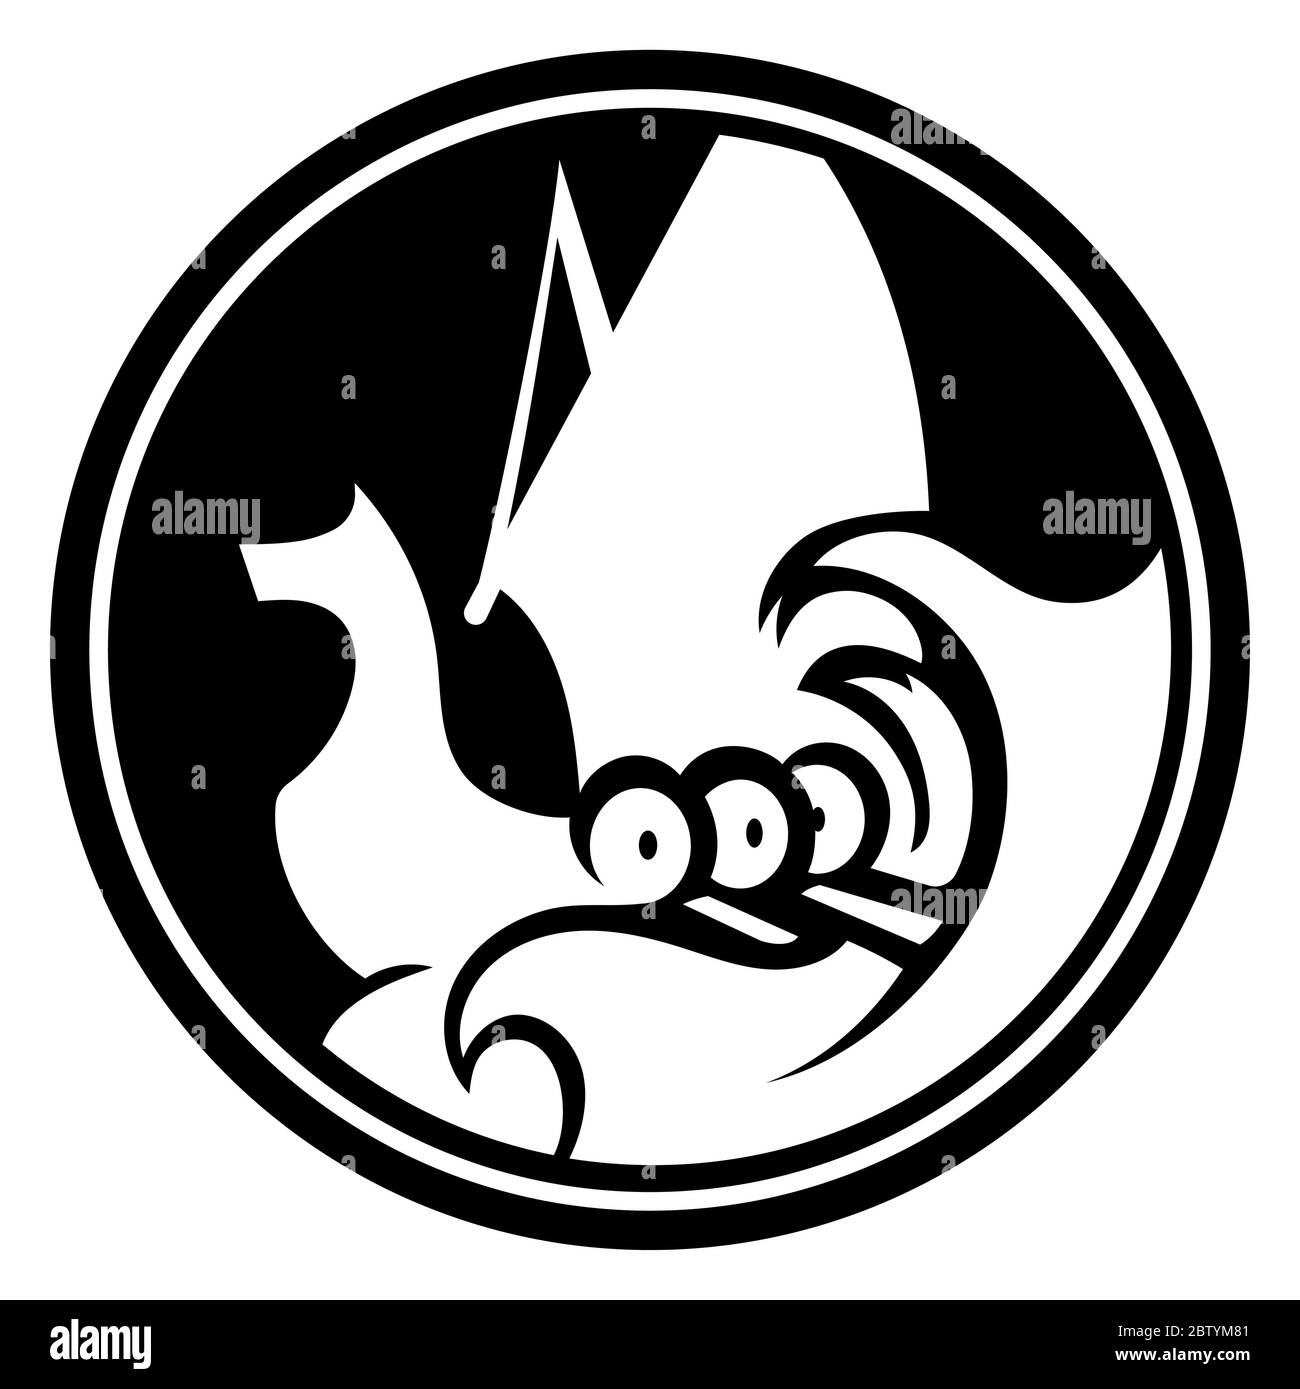 Un'antica immagine scandinava di una nave vichinga decorata con una testa di drago. Logo Drakar Illustrazione Vettoriale